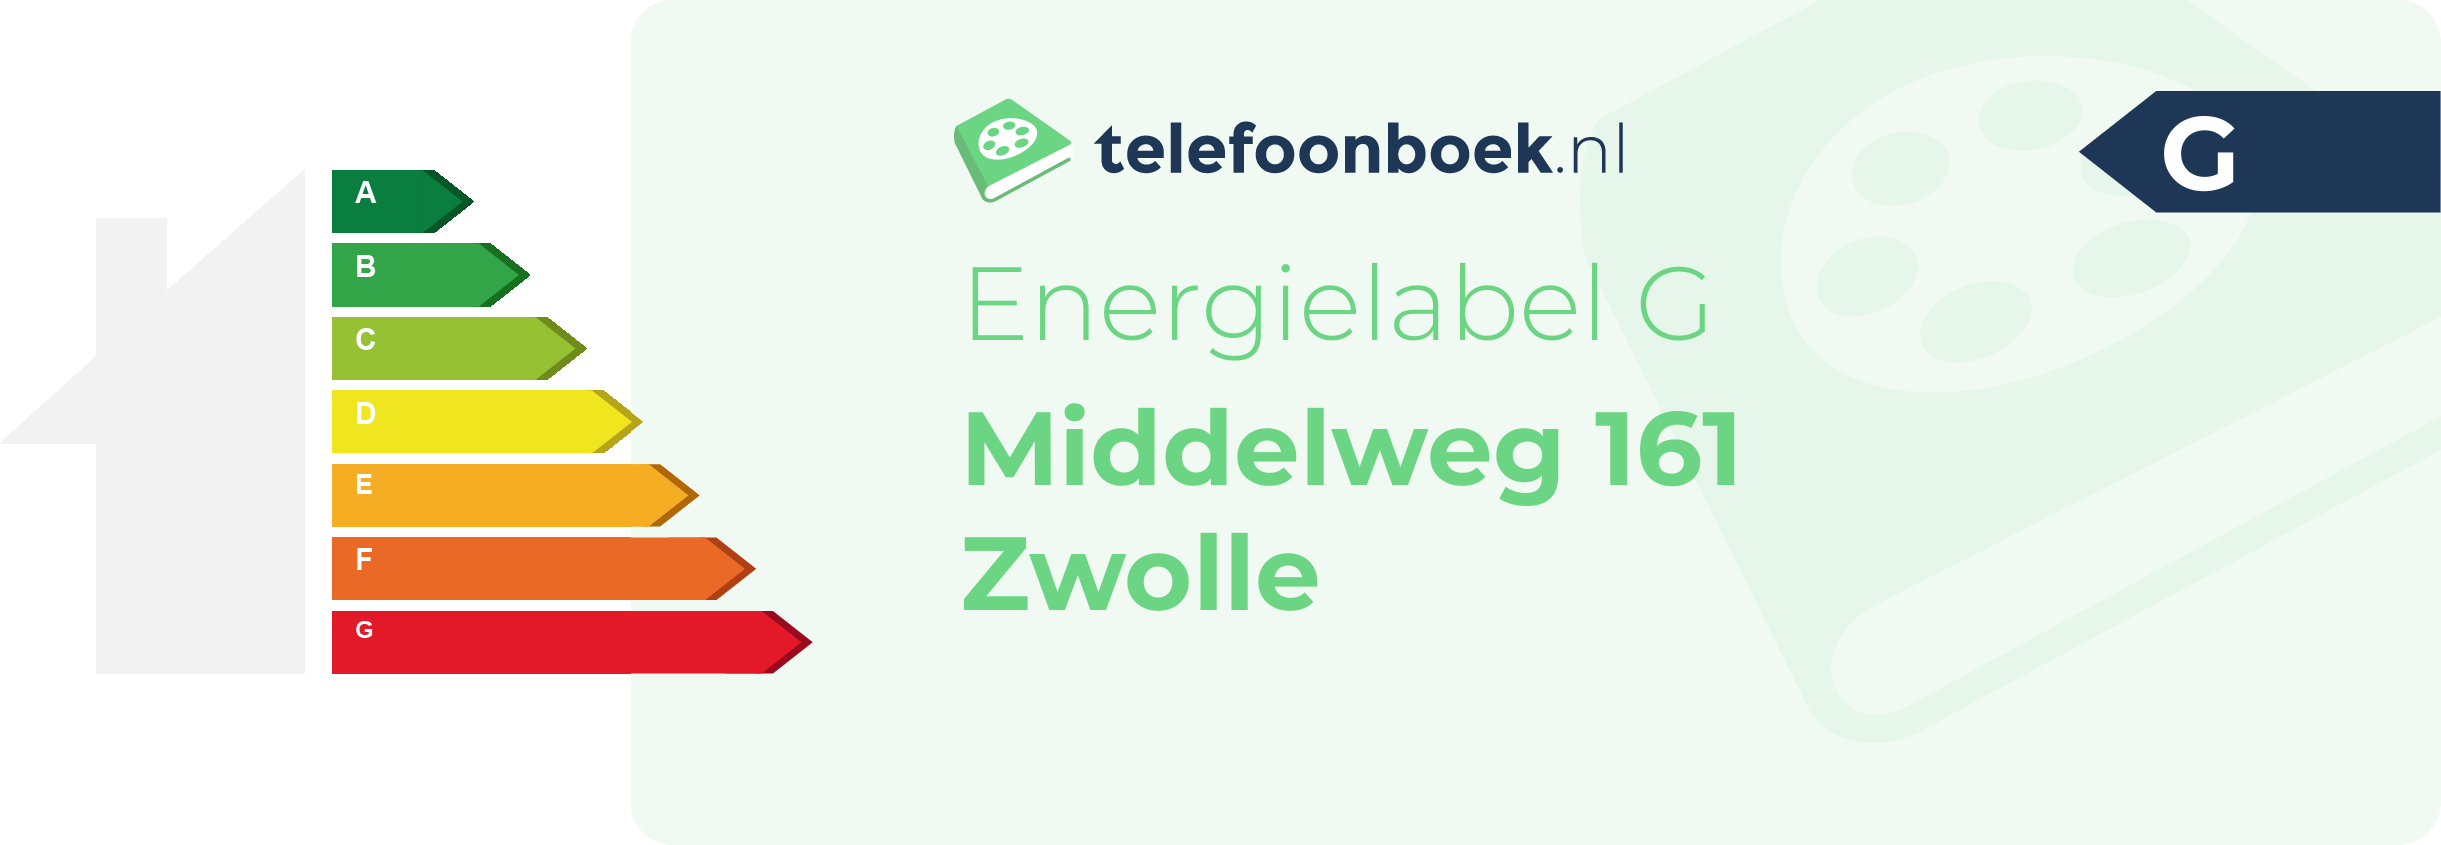 Energielabel Middelweg 161 Zwolle